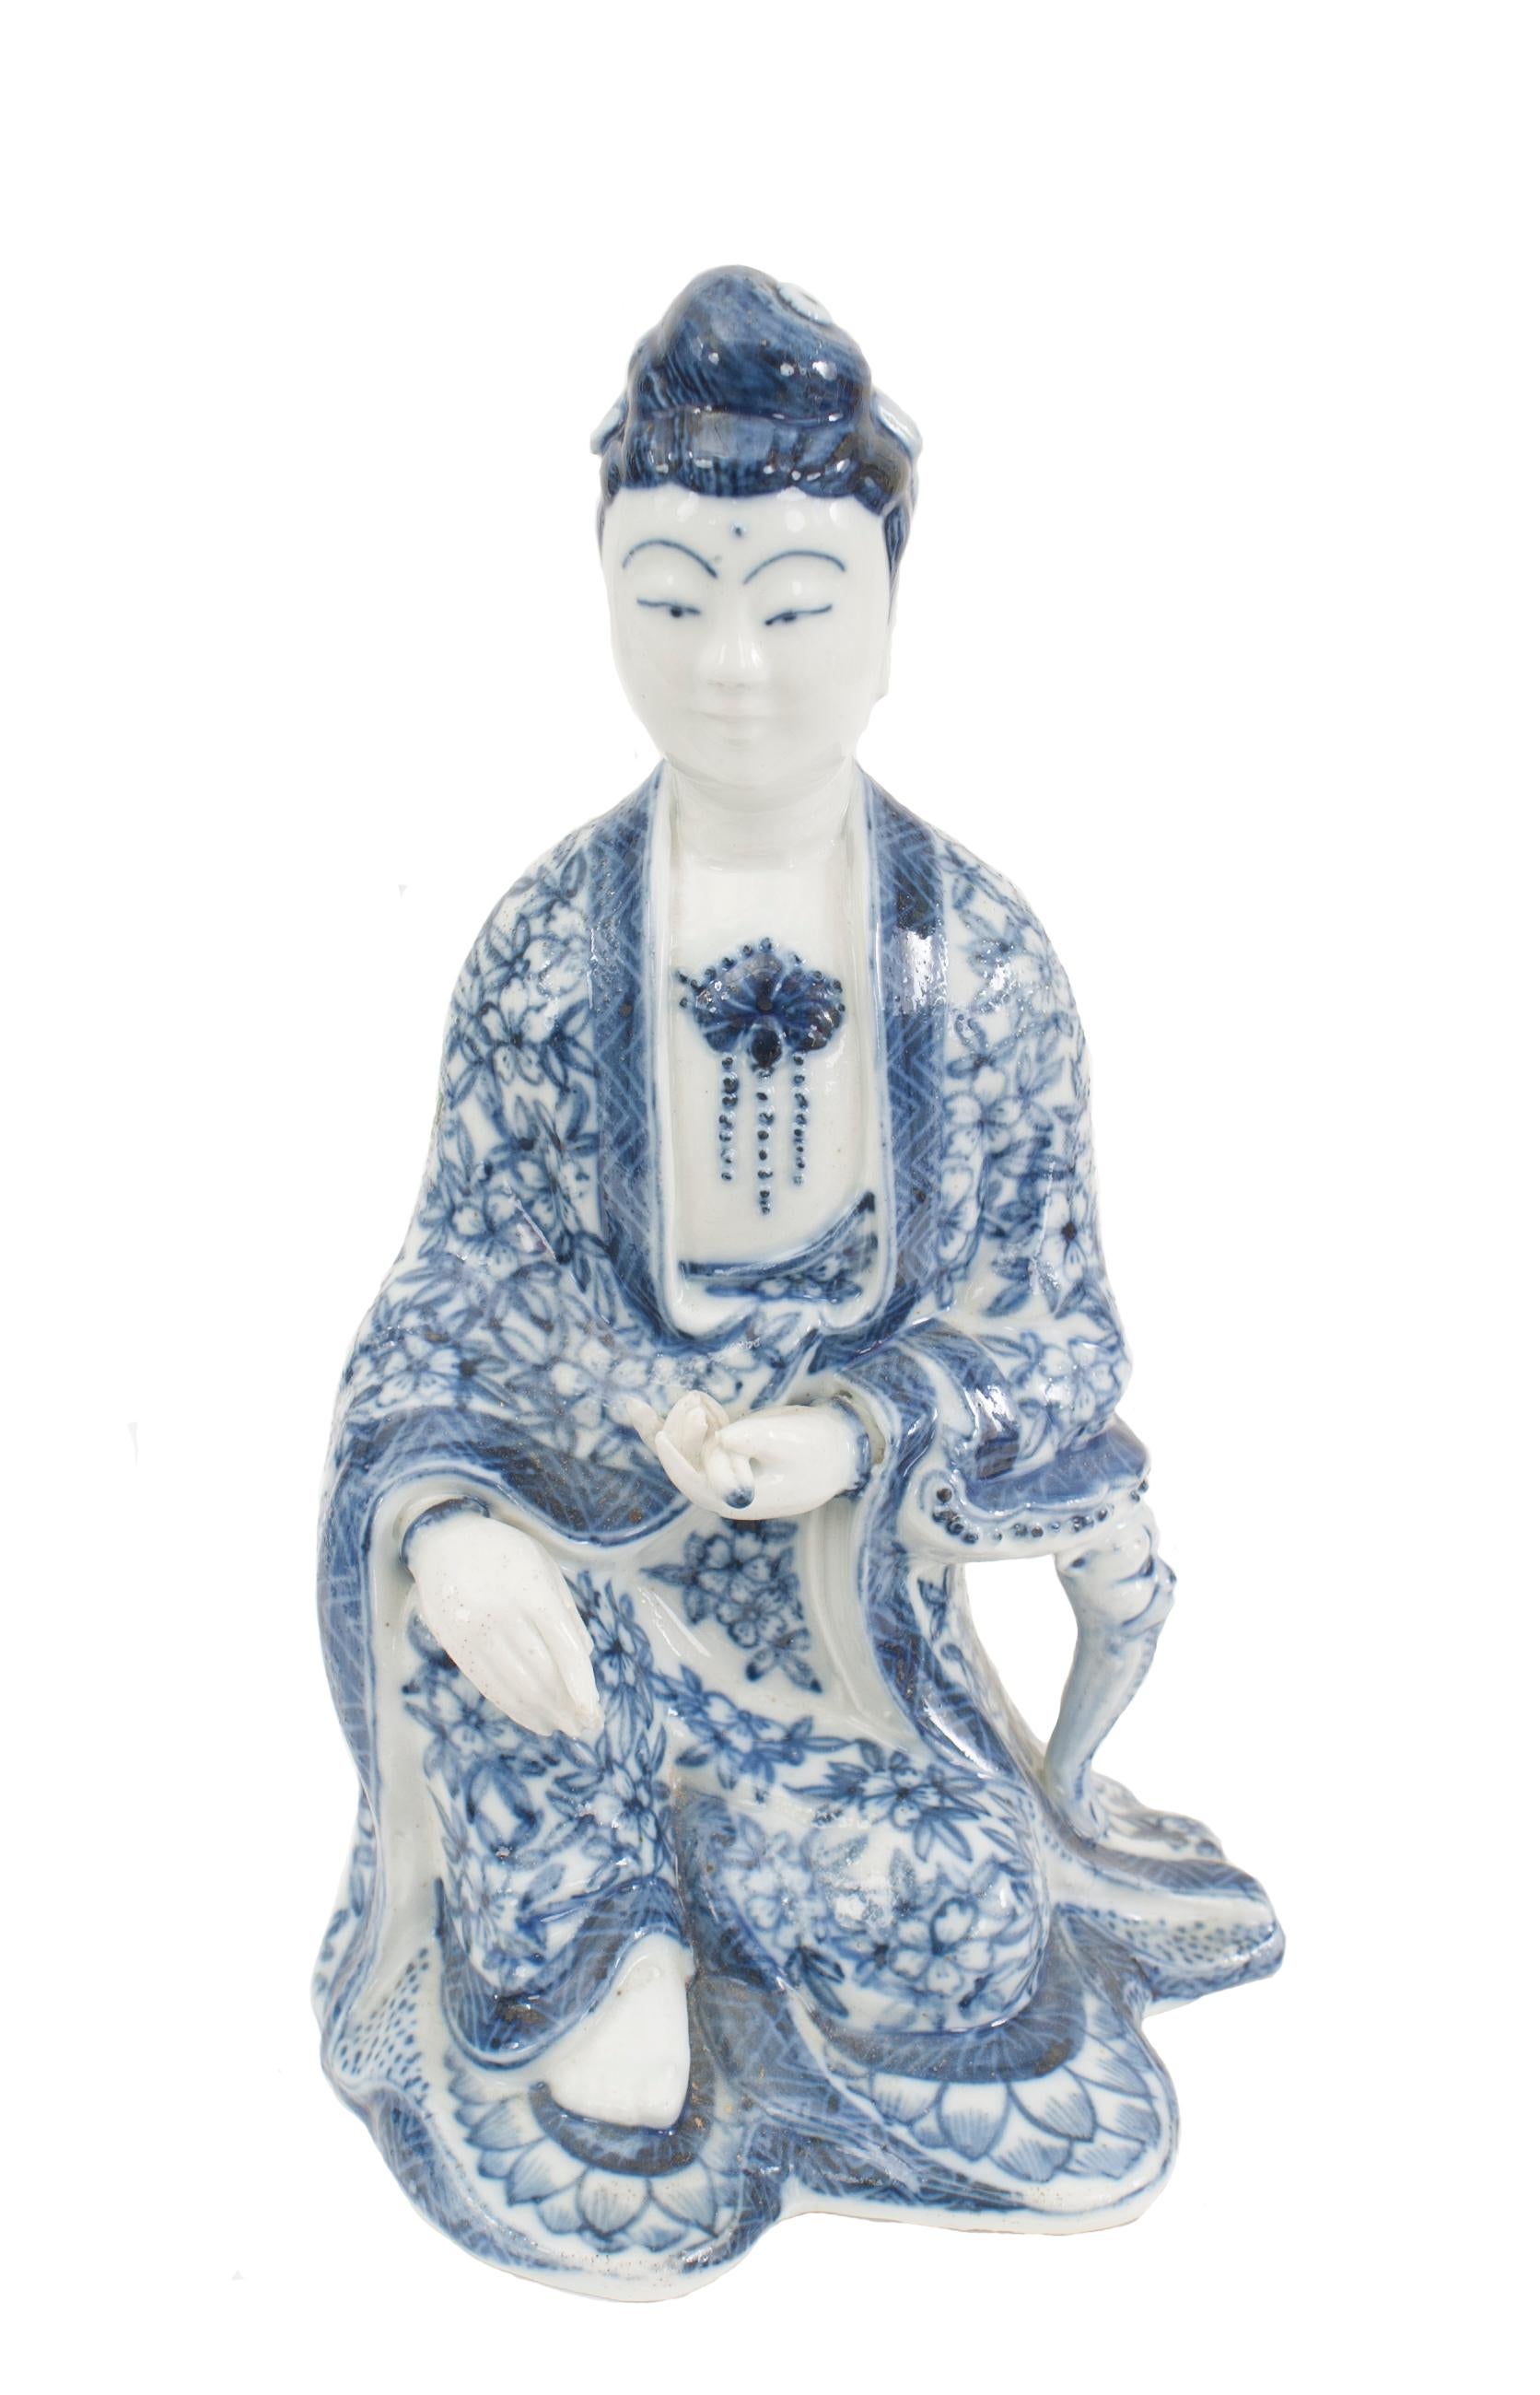 7 asiatisch-chinesische (20. Jh.) Porzellanfiguren in blau-weißem Dekor in traditioneller Kleidung (PREIS PRO STÜCK).